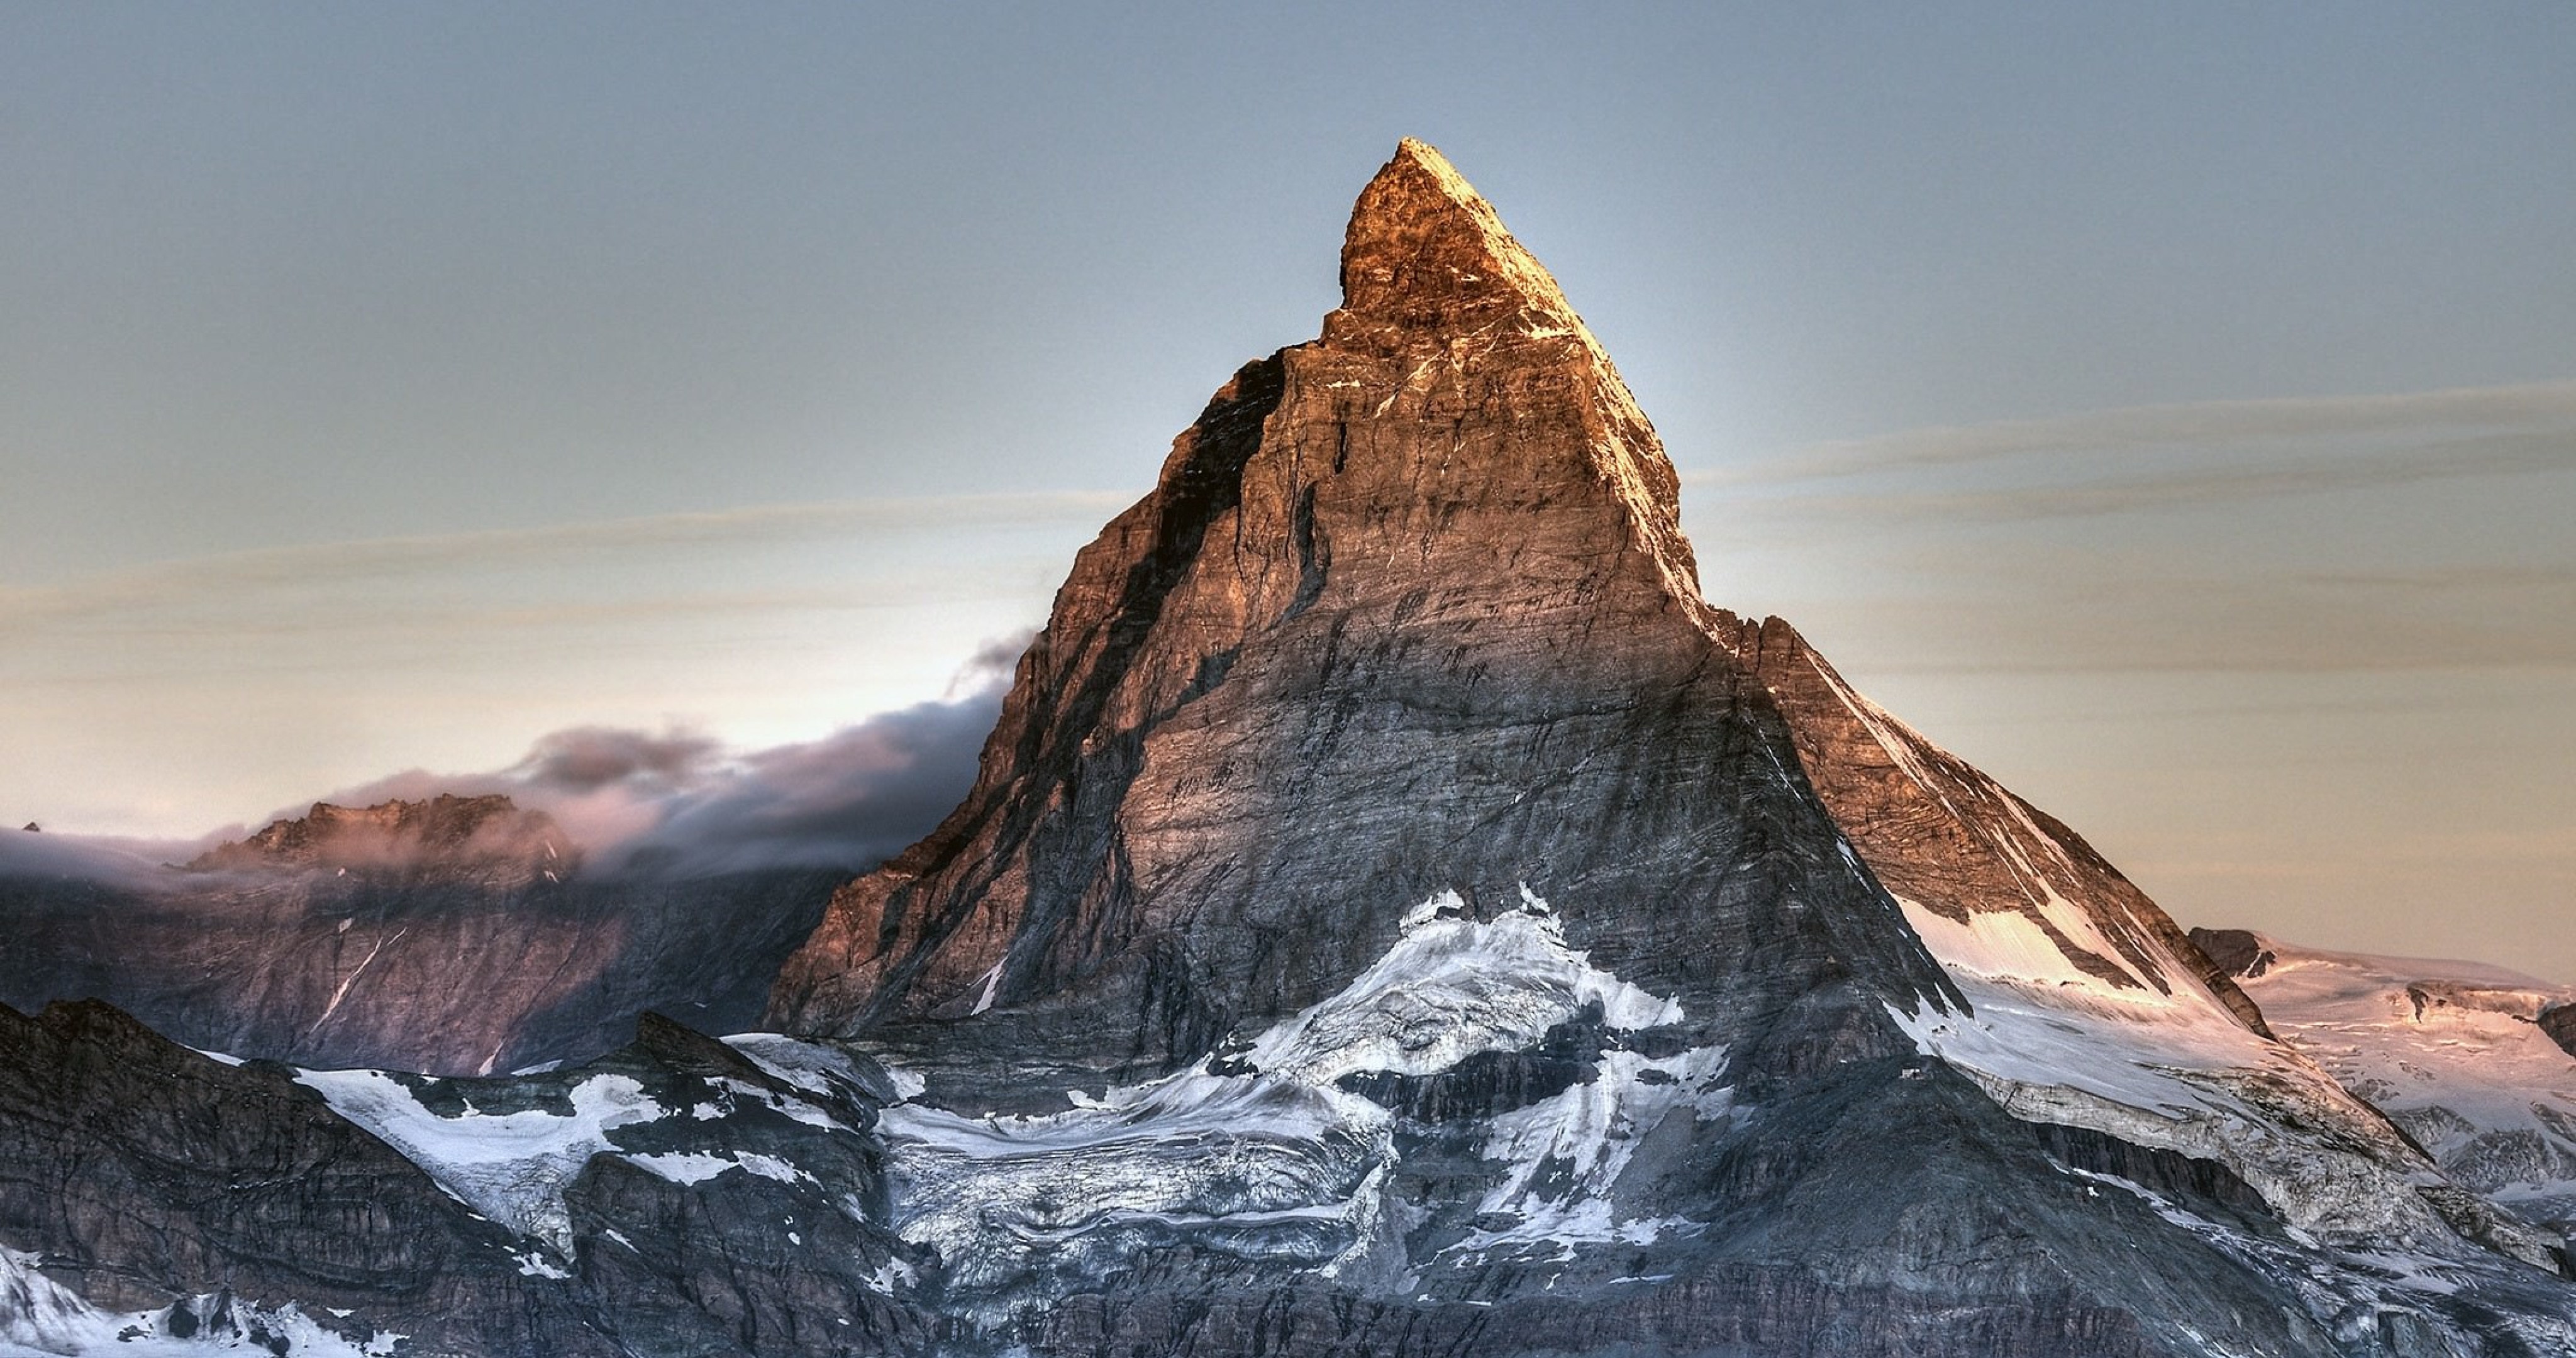 Matterhorn Mountain 4k Ultra HD Wallpaper High Quality Walls